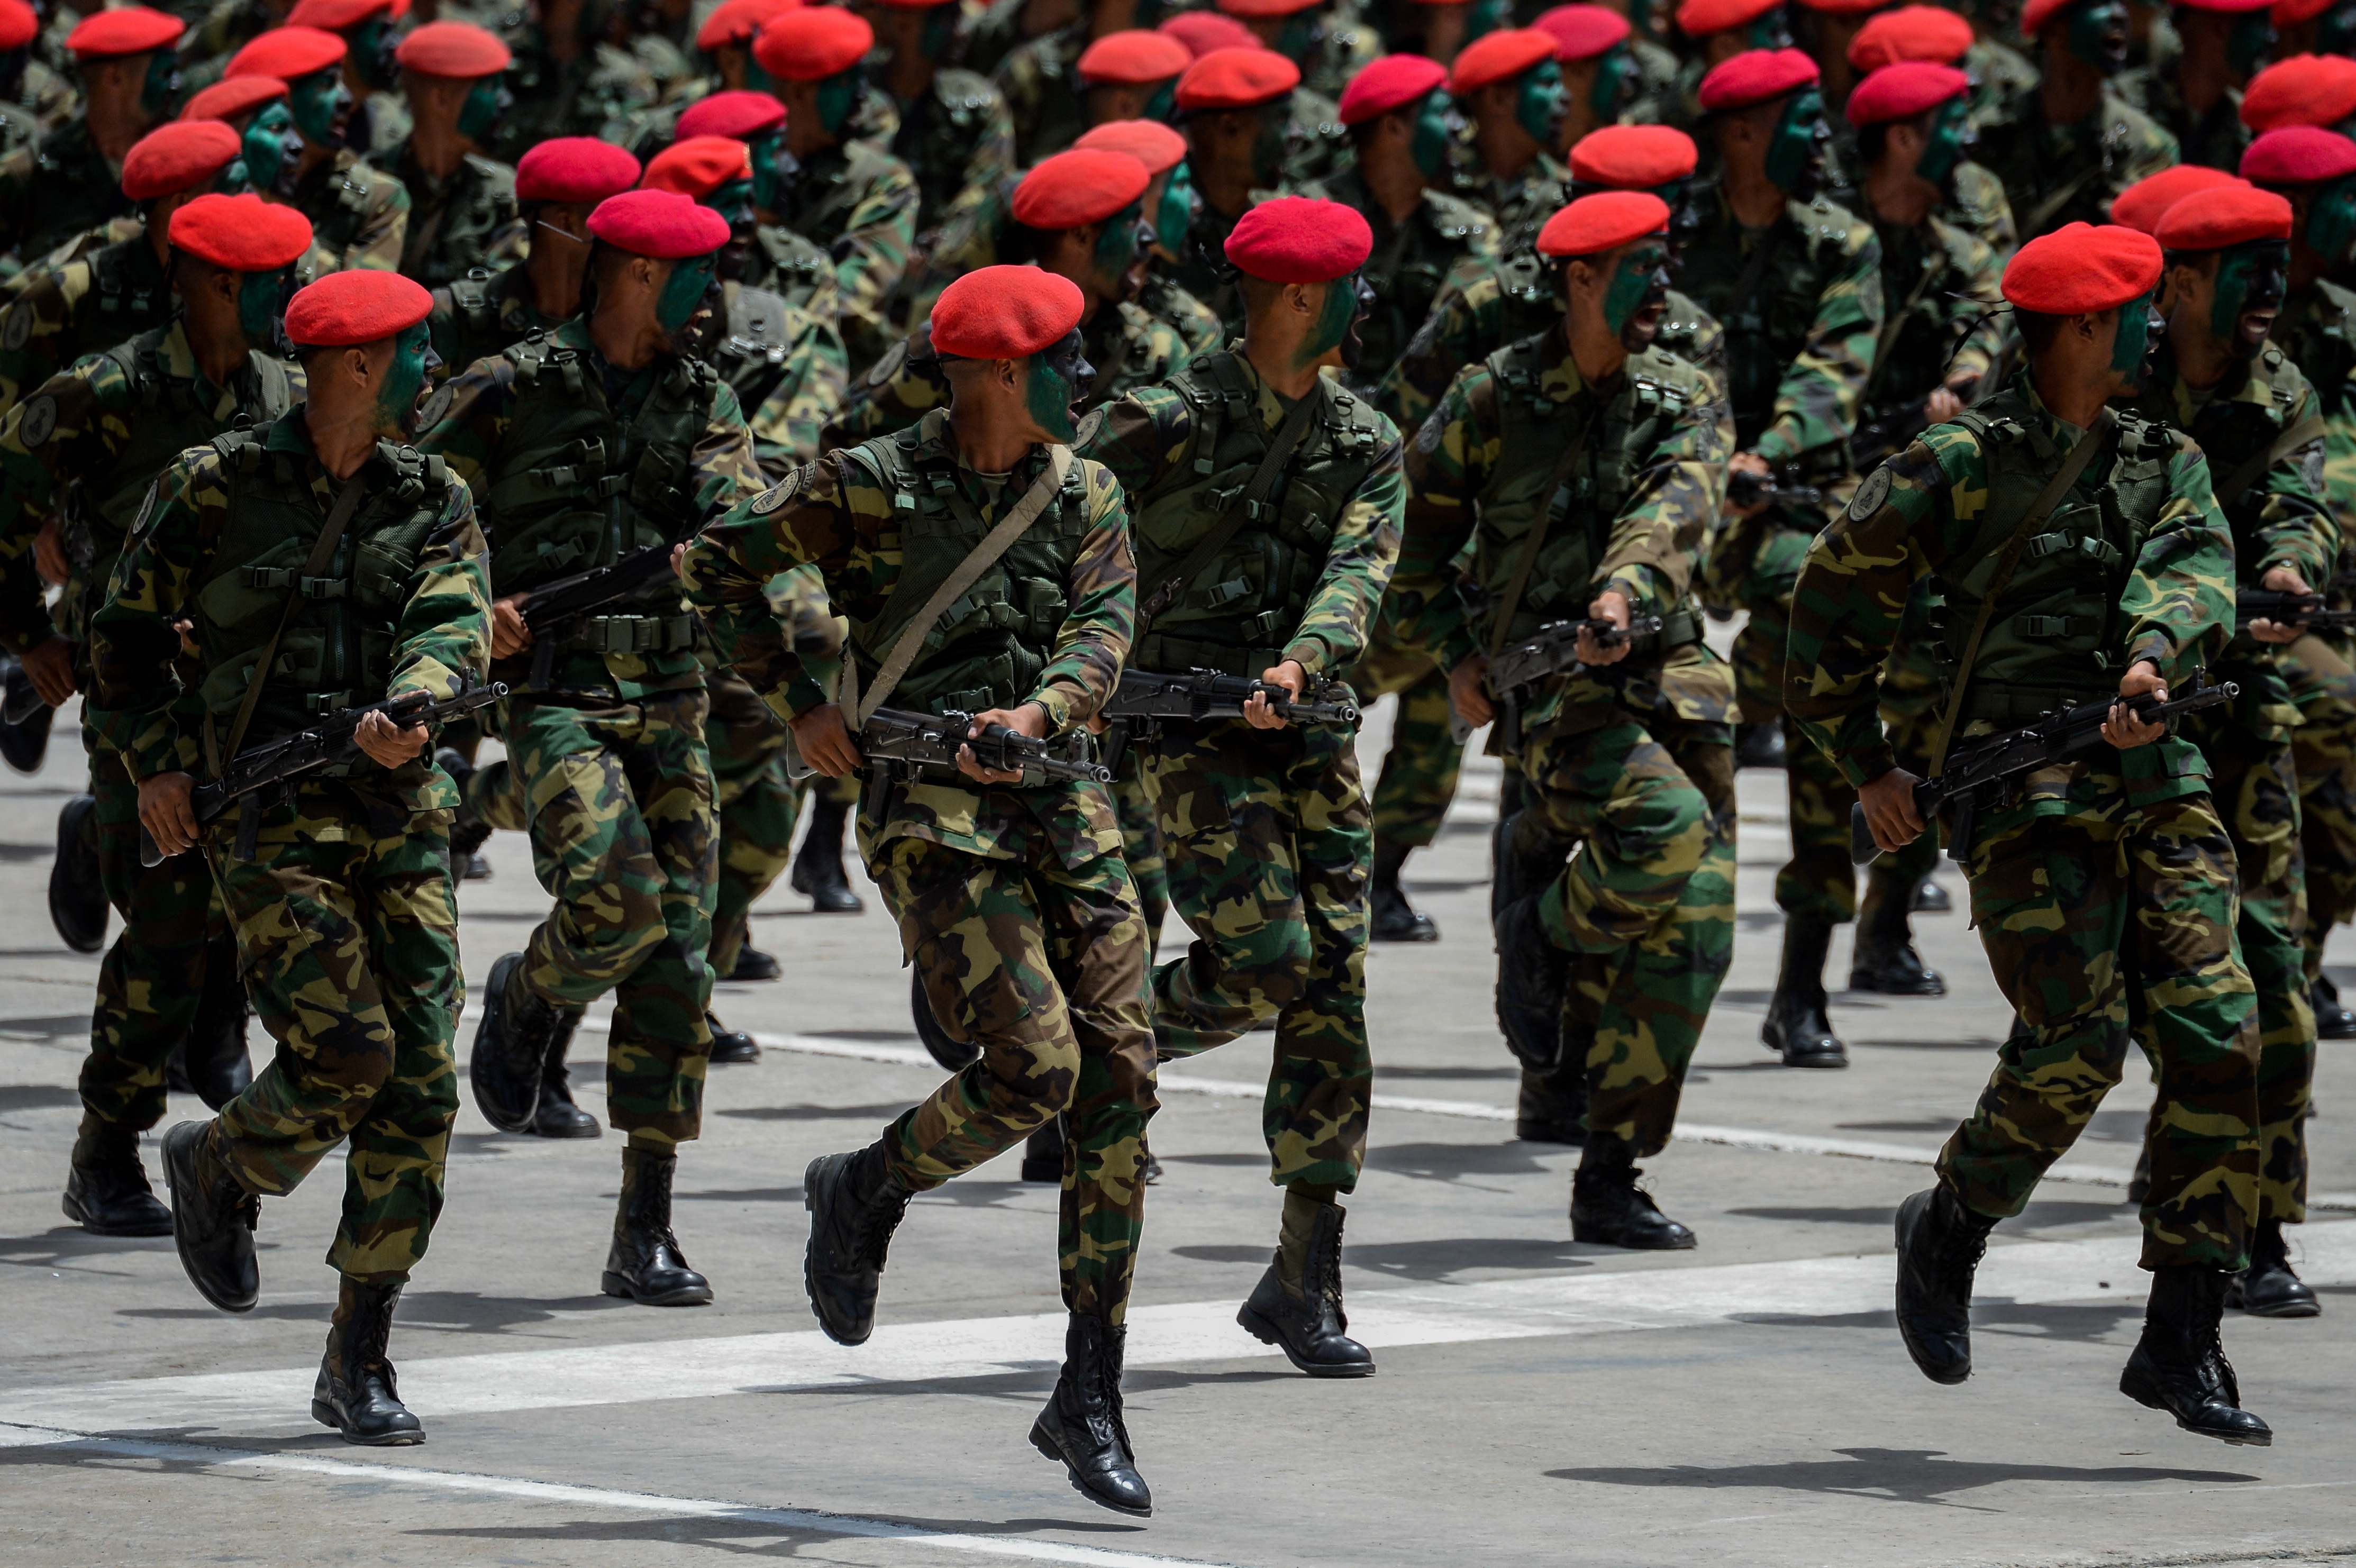 Frente Institucional Militar pide justa y debida atención procesal a militares detenidos (Comunicado)